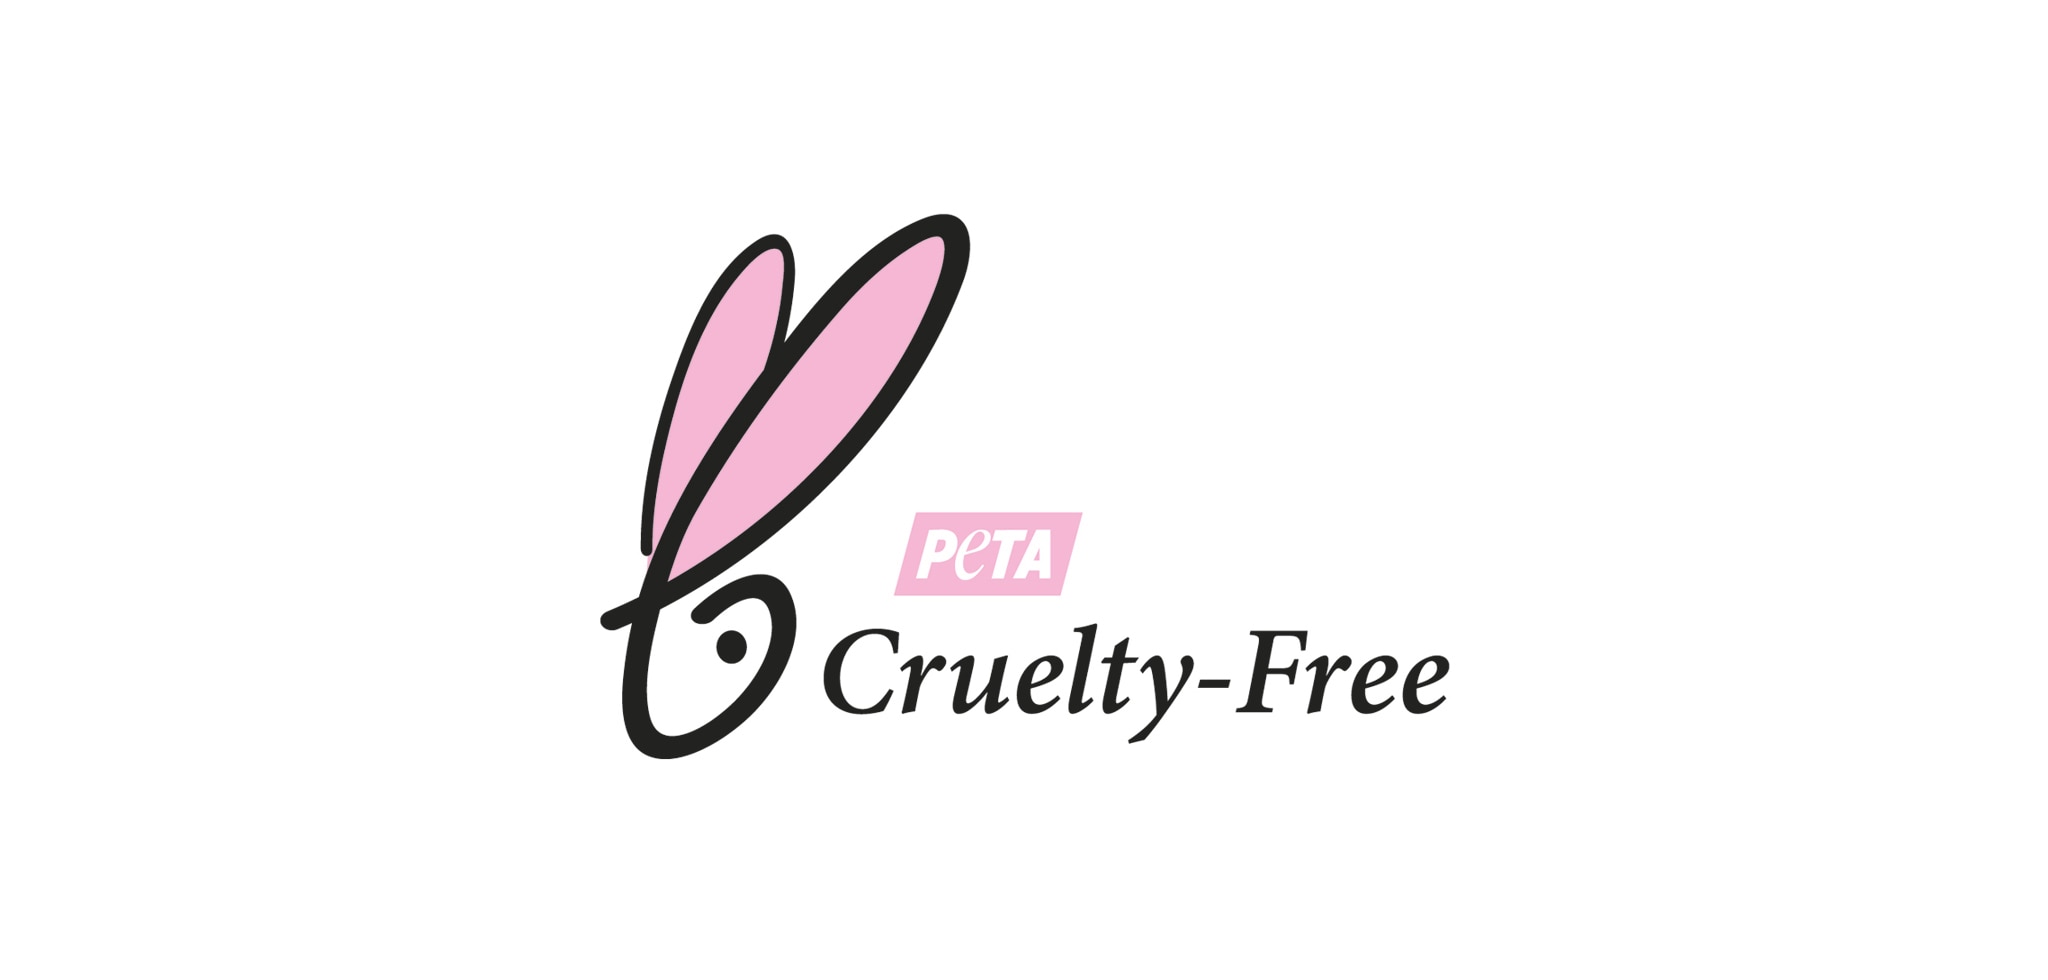 Productos cruelty-free: libres de crueldad animal